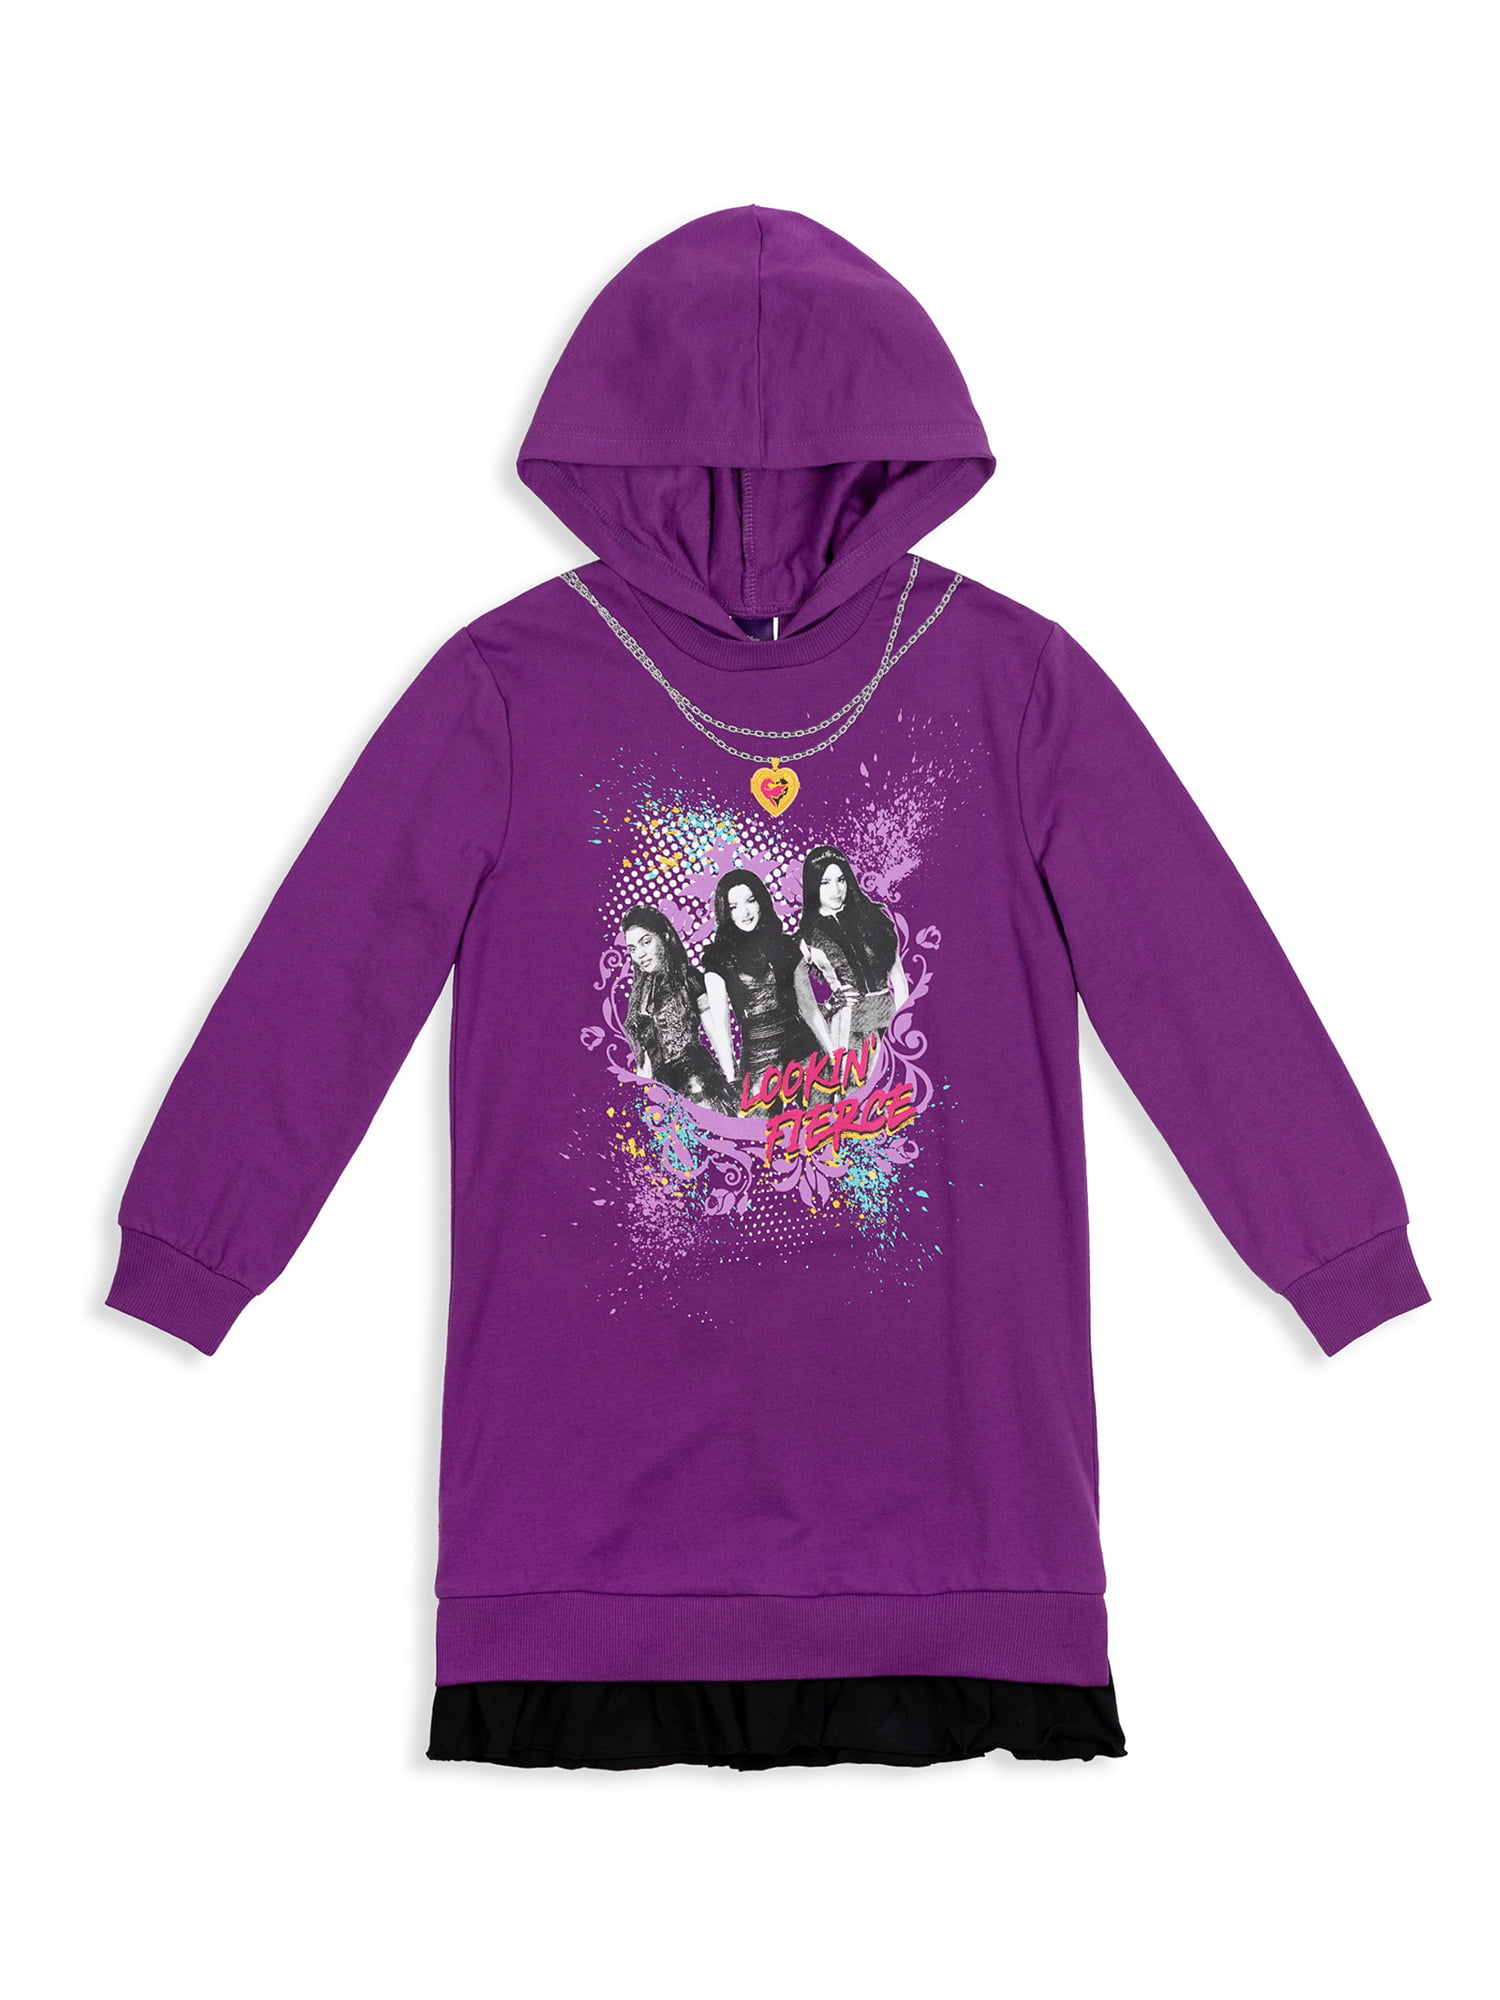 Size Small Disney's Lilo & Stitch Girls 7-16 Tie-Dye Graphic Fleece Sweatshirt